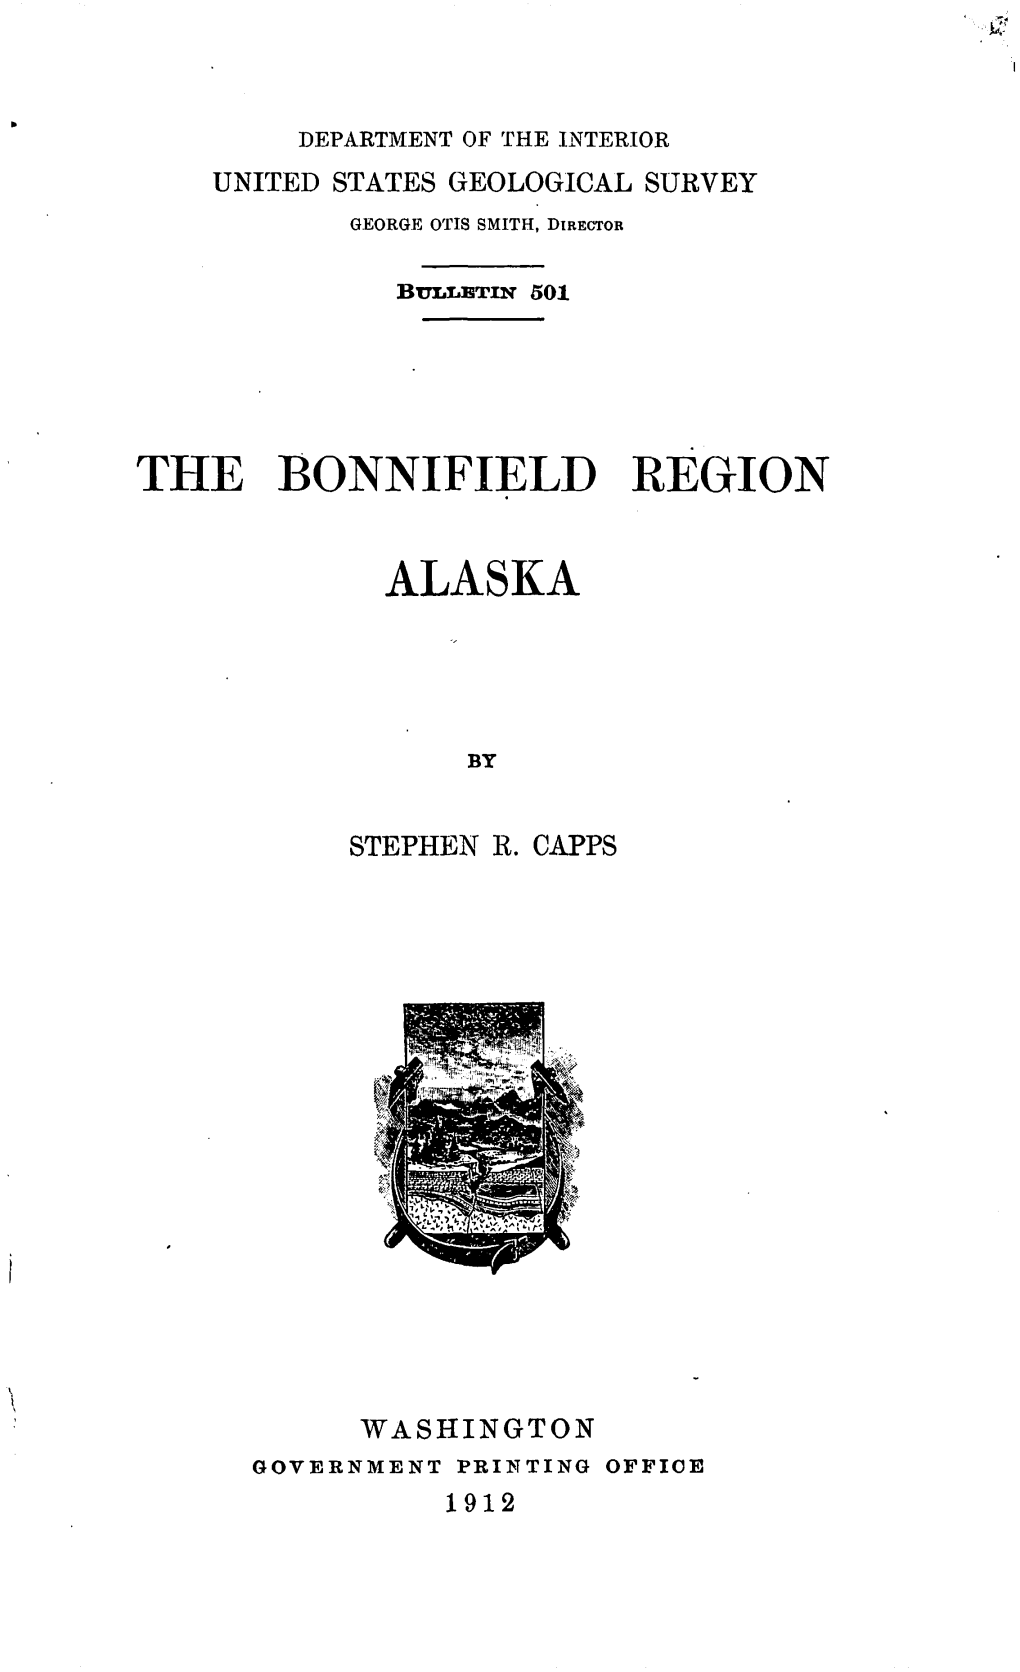 The Bonnifield Region Alaska